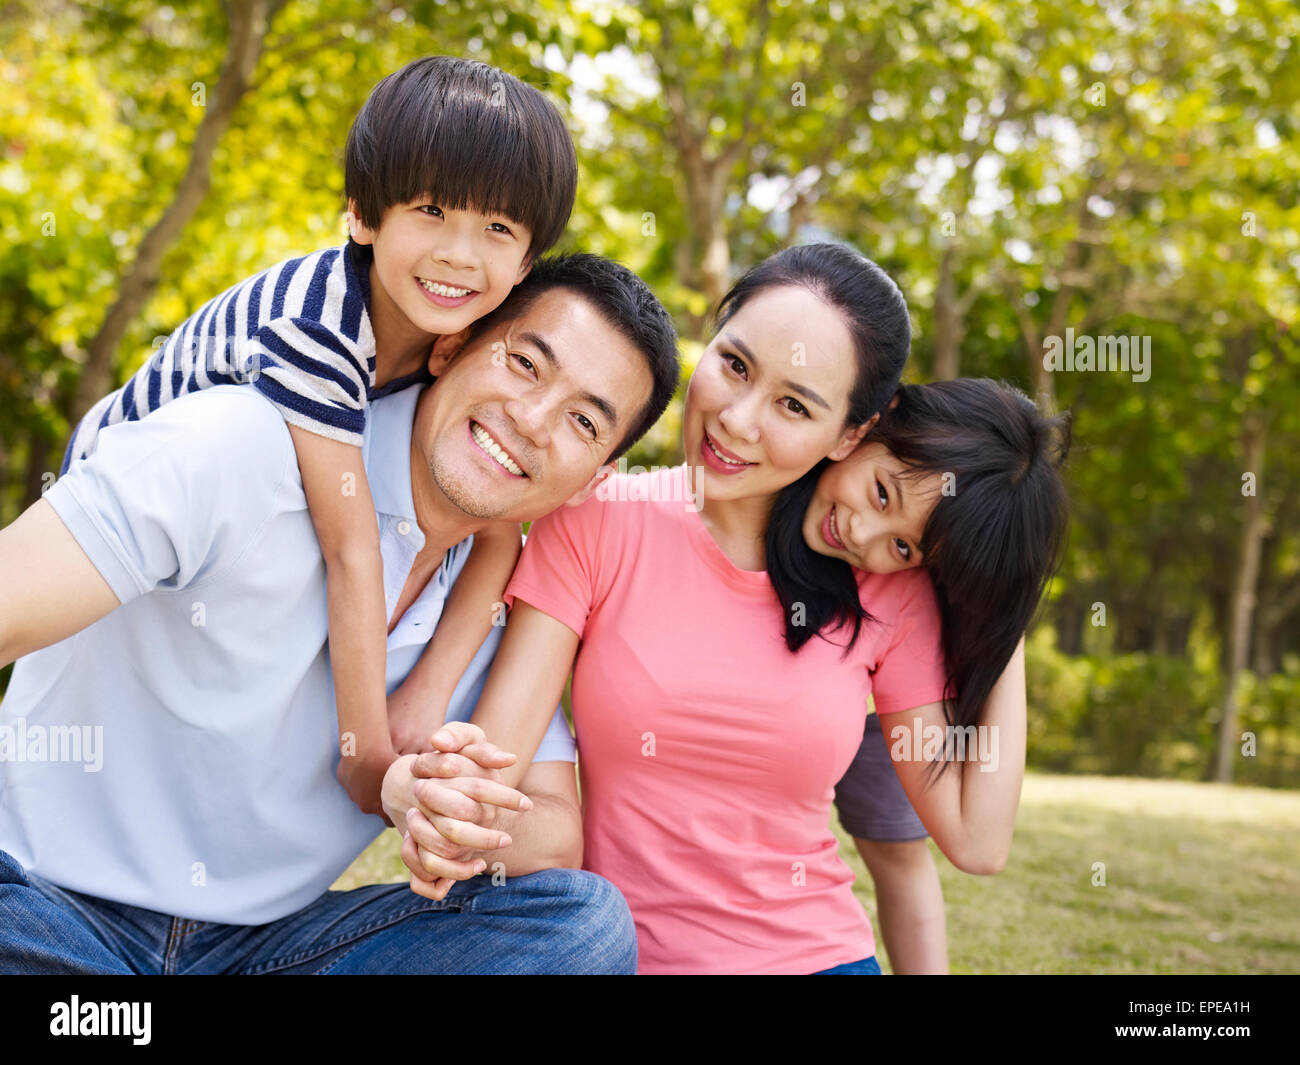 happy asian family outdoors Stock Photo